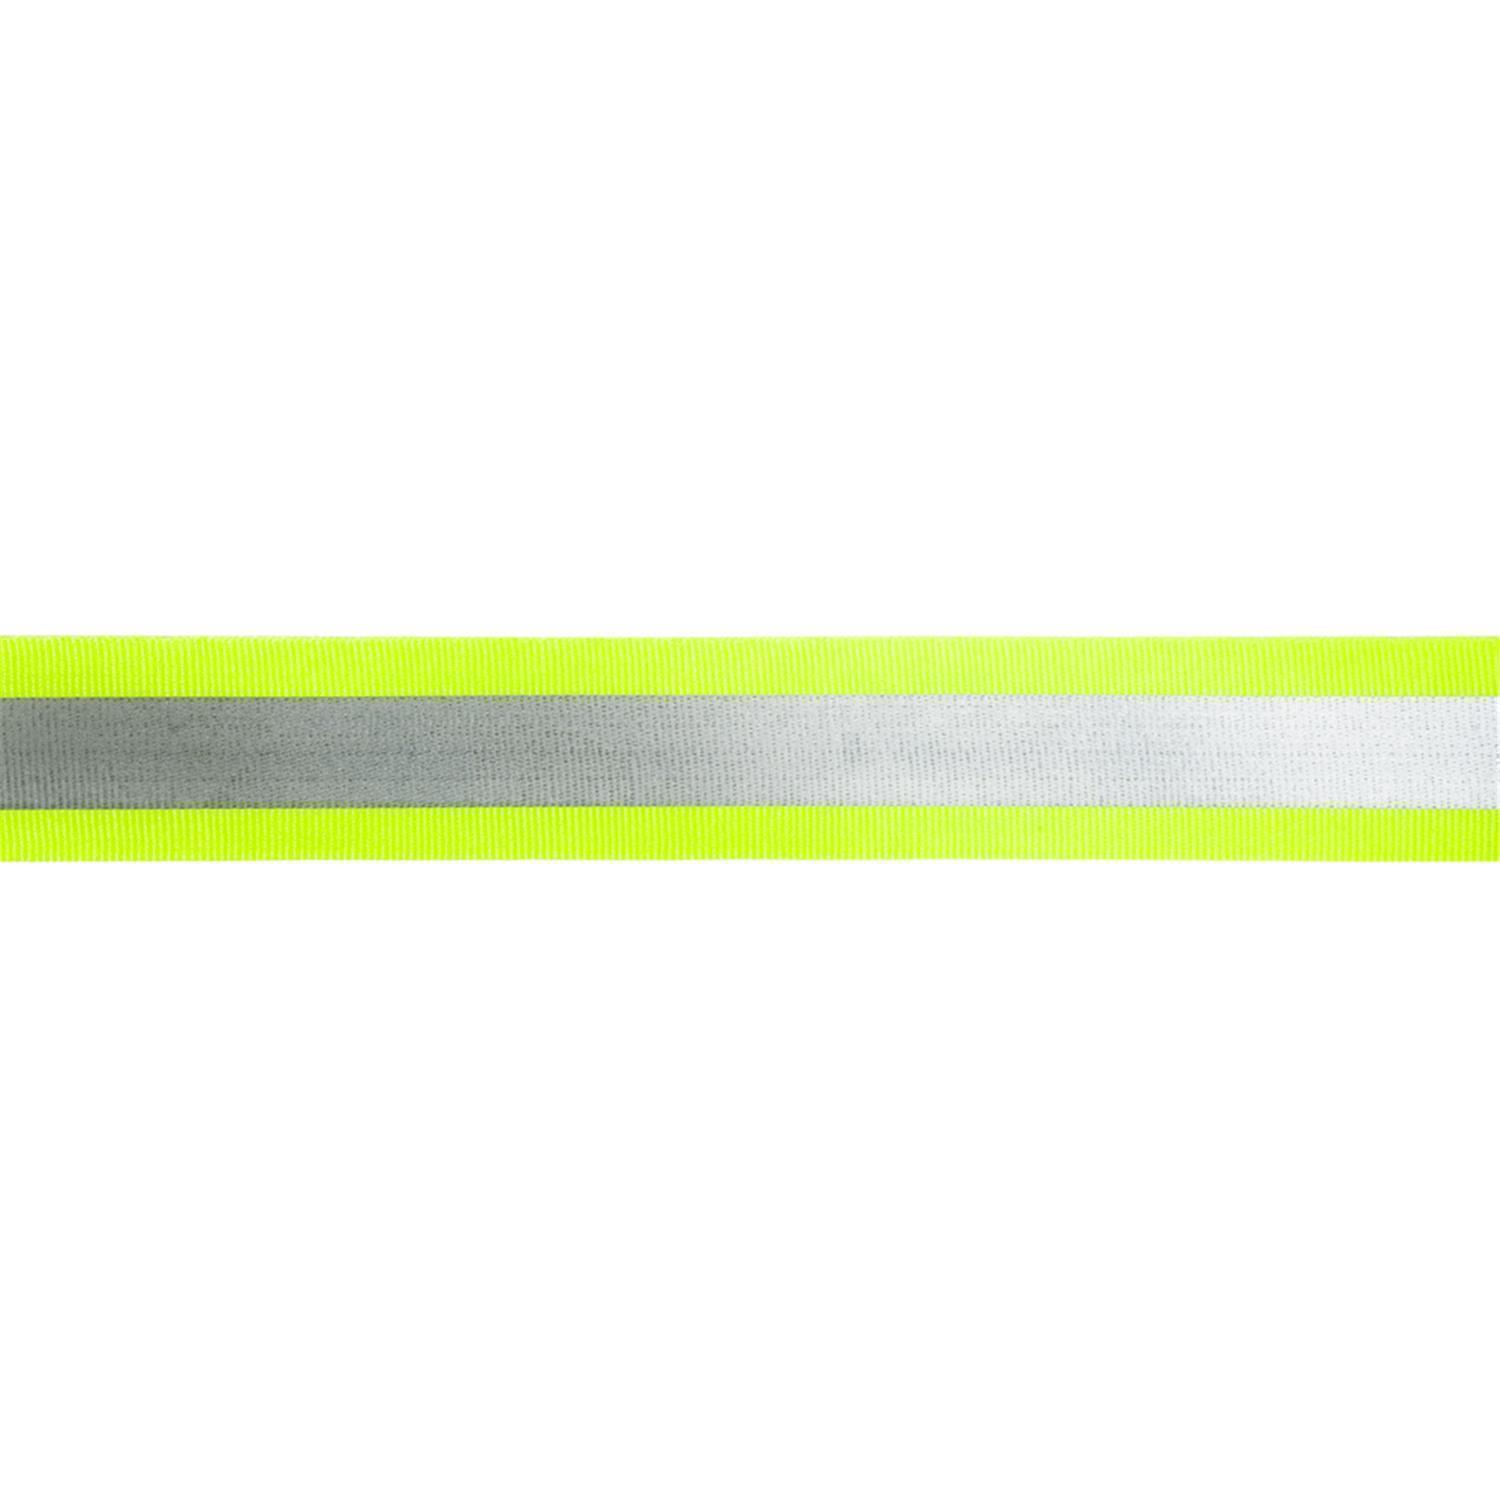 Reflektorband 25mm breit in 3 Farben gelb-silber 05 Meter